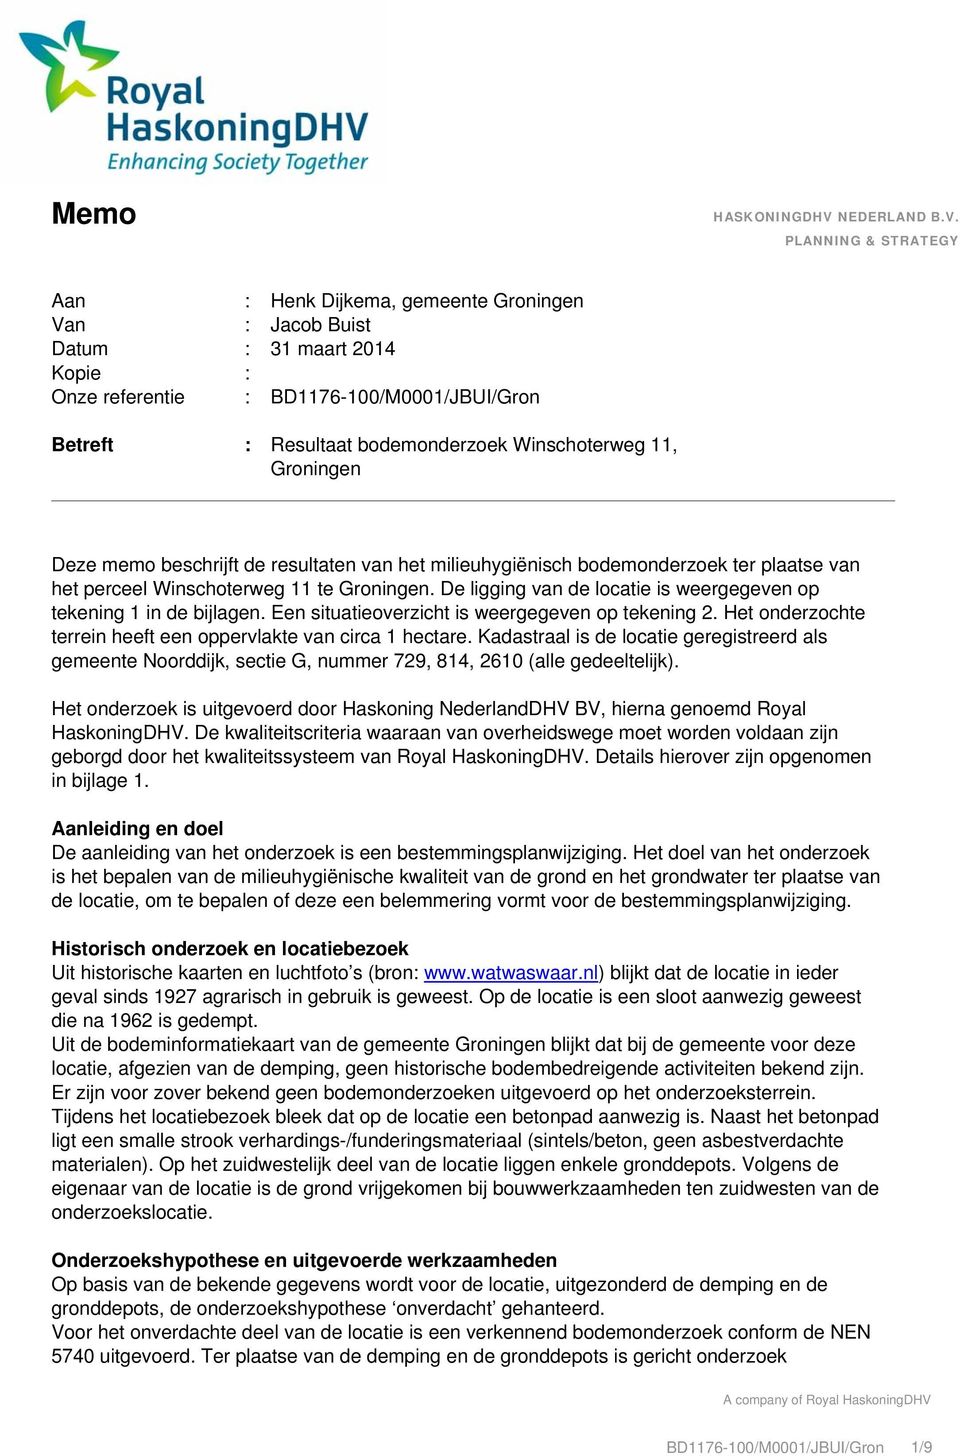 PLANNING & STRATEGY Aan : Henk Dijkema, gemeente Groningen Van : Jacob Buist Datum : 31 maart 2014 Kopie : Onze referentie : BD1176-100/M0001/JBUI/Gron Betreft : Resultaat bodemonderzoek